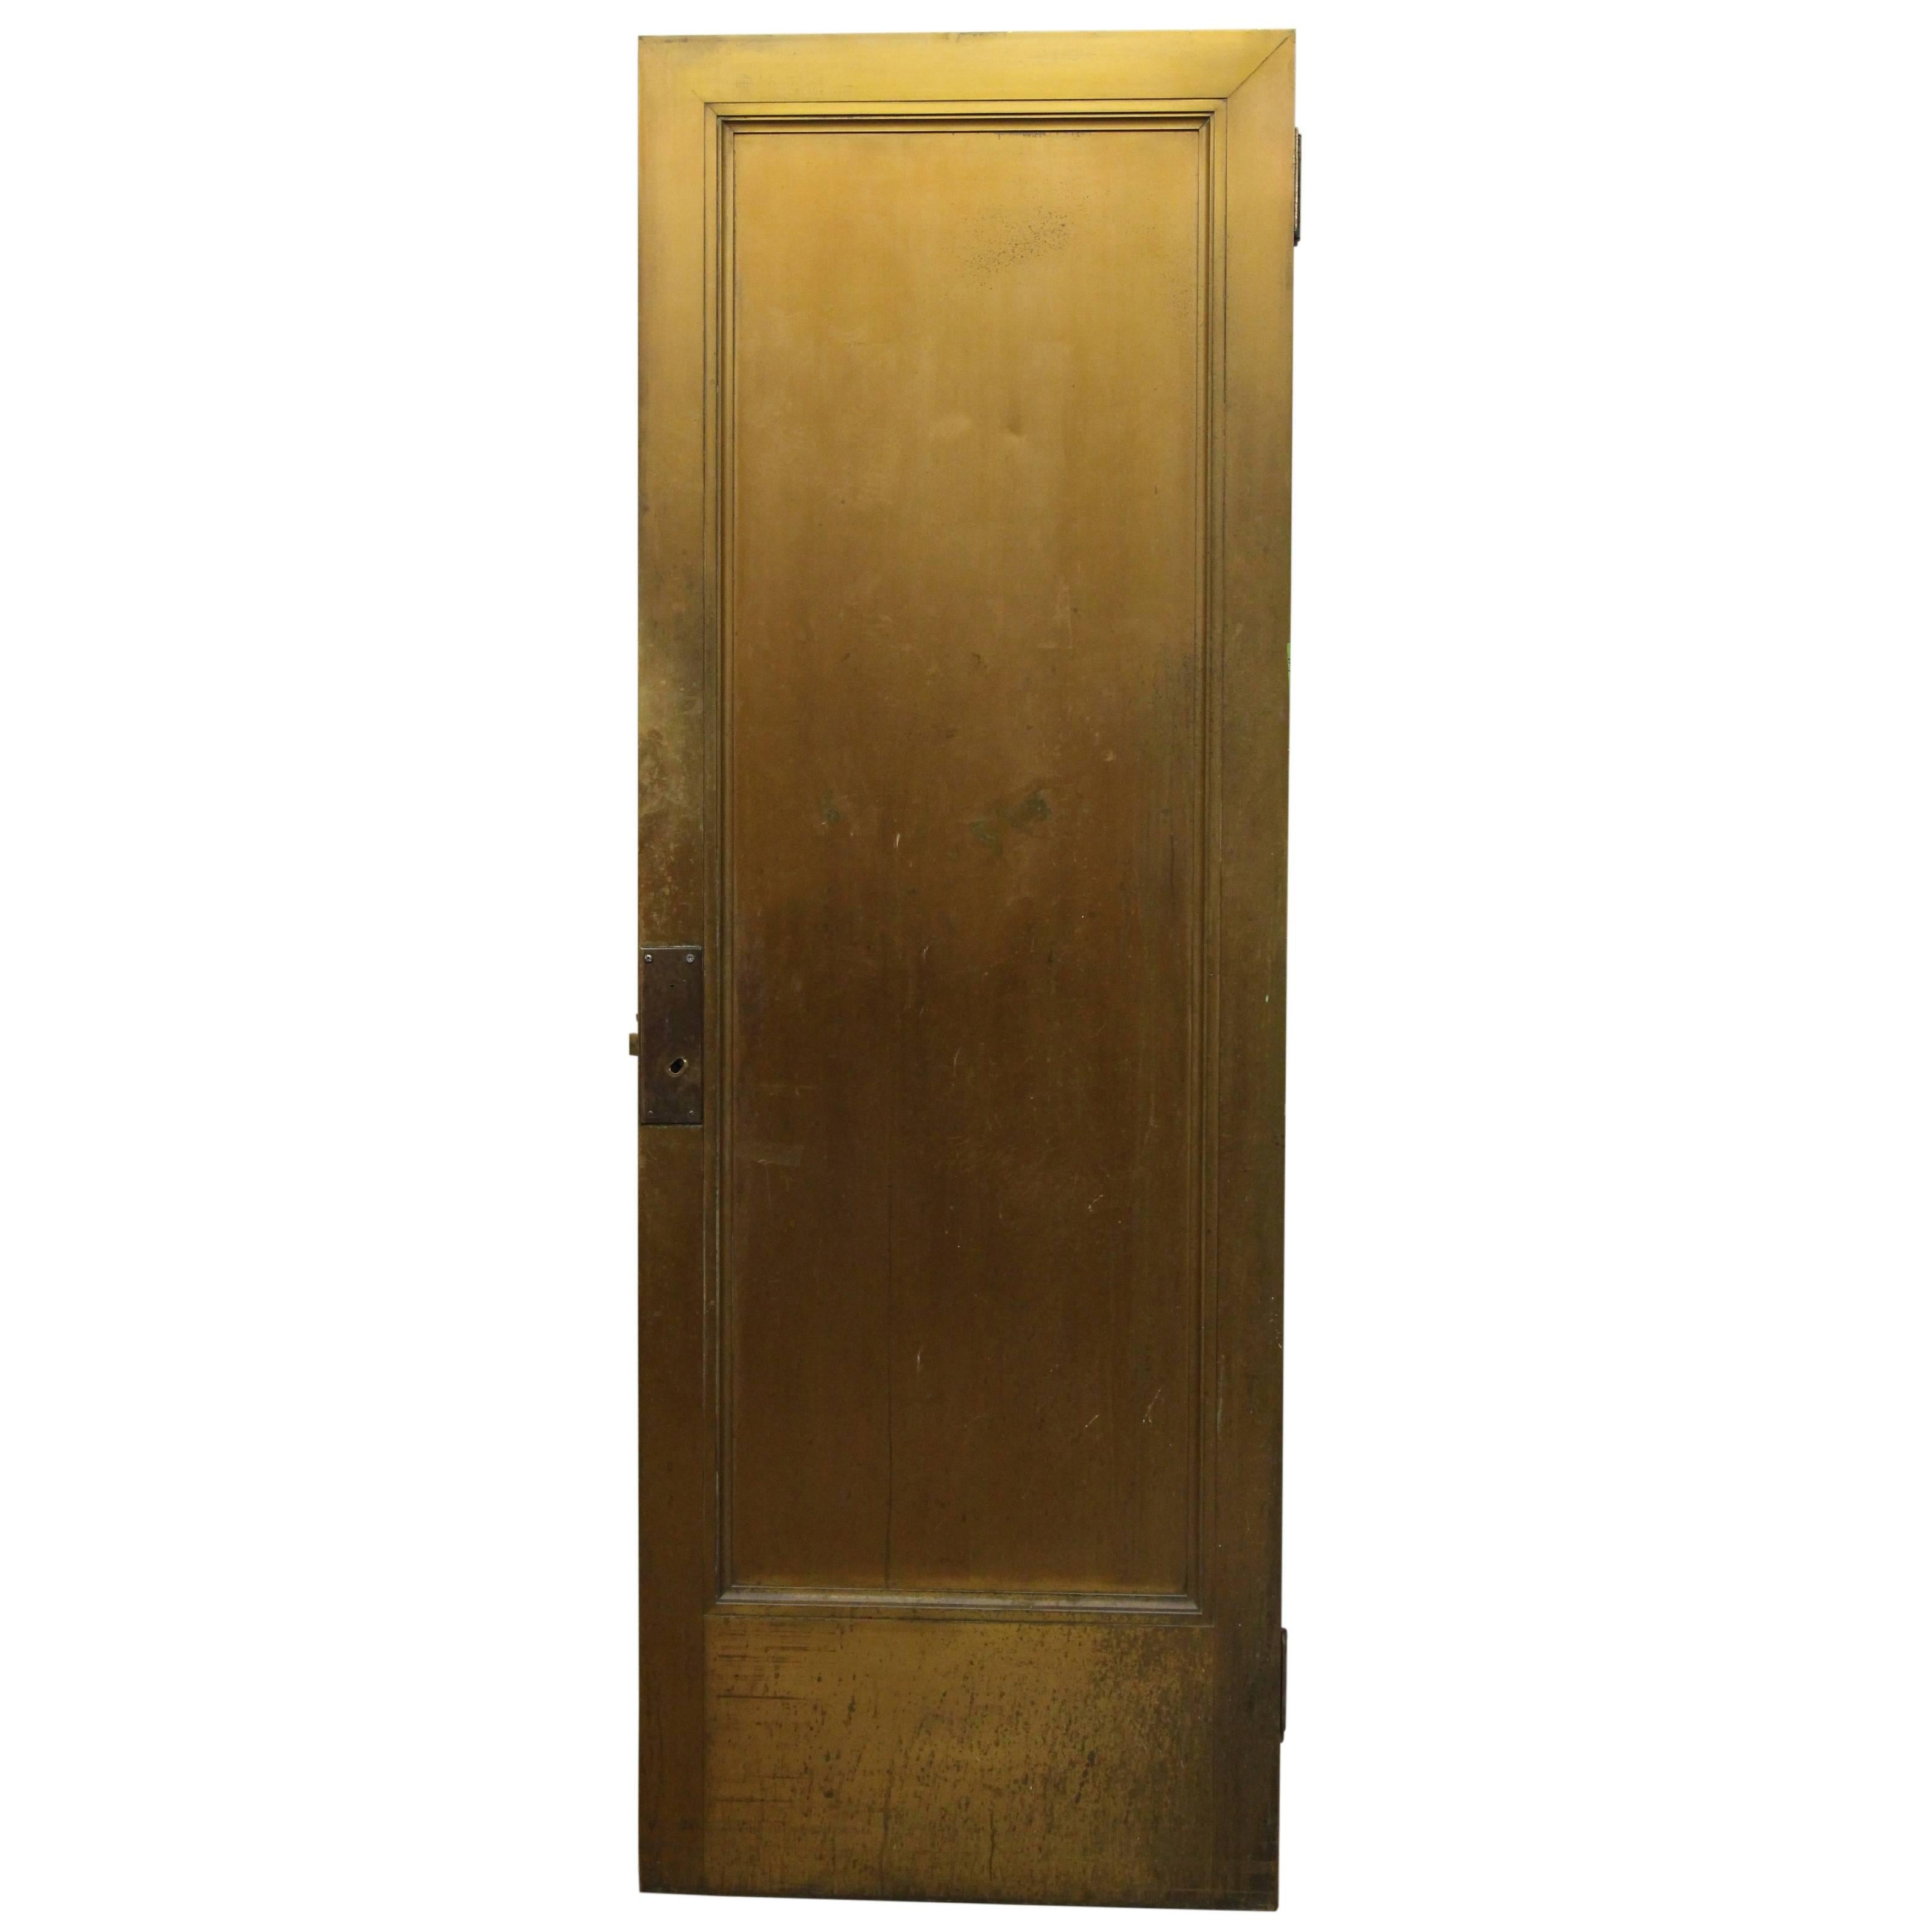 1920s Brass Door from a Manhattan Lobby